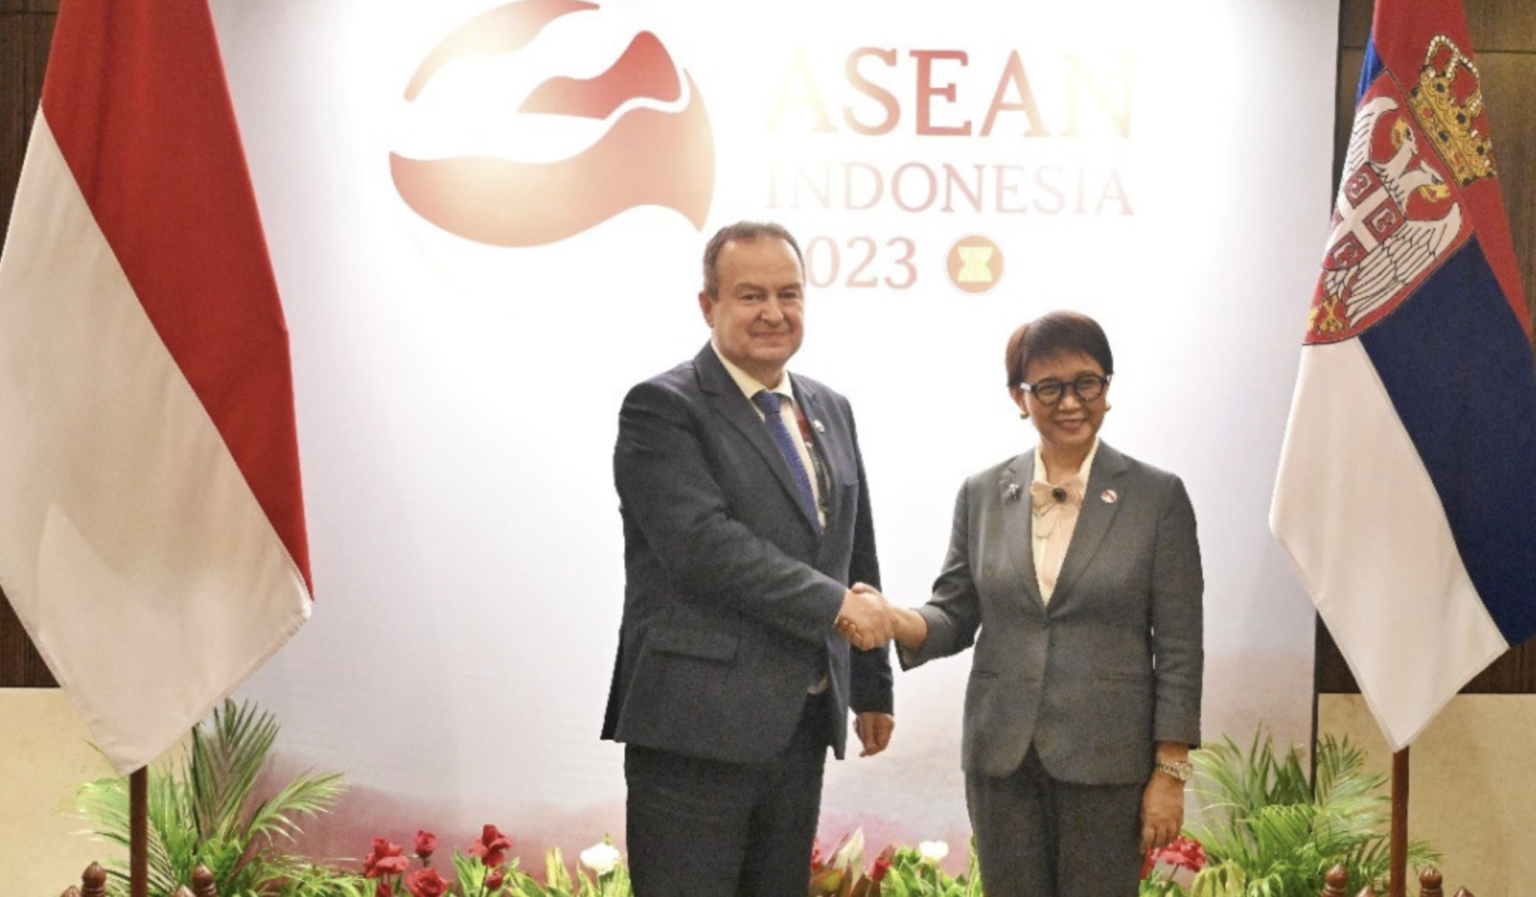 Menteri Luar Negeri RI Retno Marsudi bertemu dengan Menteri Luar Negeri Serbia, Ivica Dačić, di sela-sela rangkaian Pertemuan Menlu ASEAN dan rangkaian KTT ke-43 ASEAN.